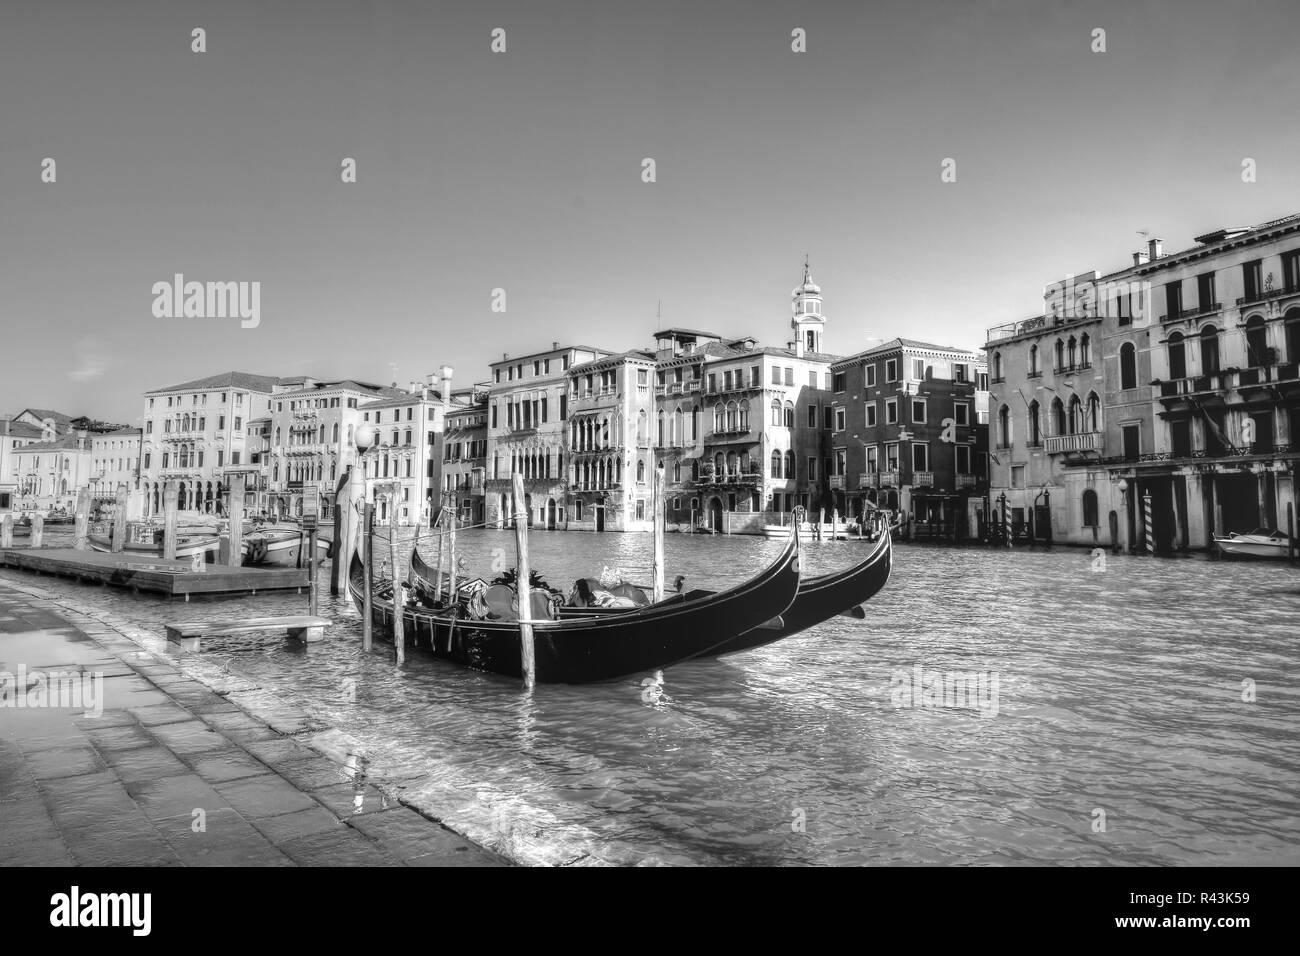 La belle et ancienne Venise, le Grand Canal, dans le quartier du Rialto Banque D'Images